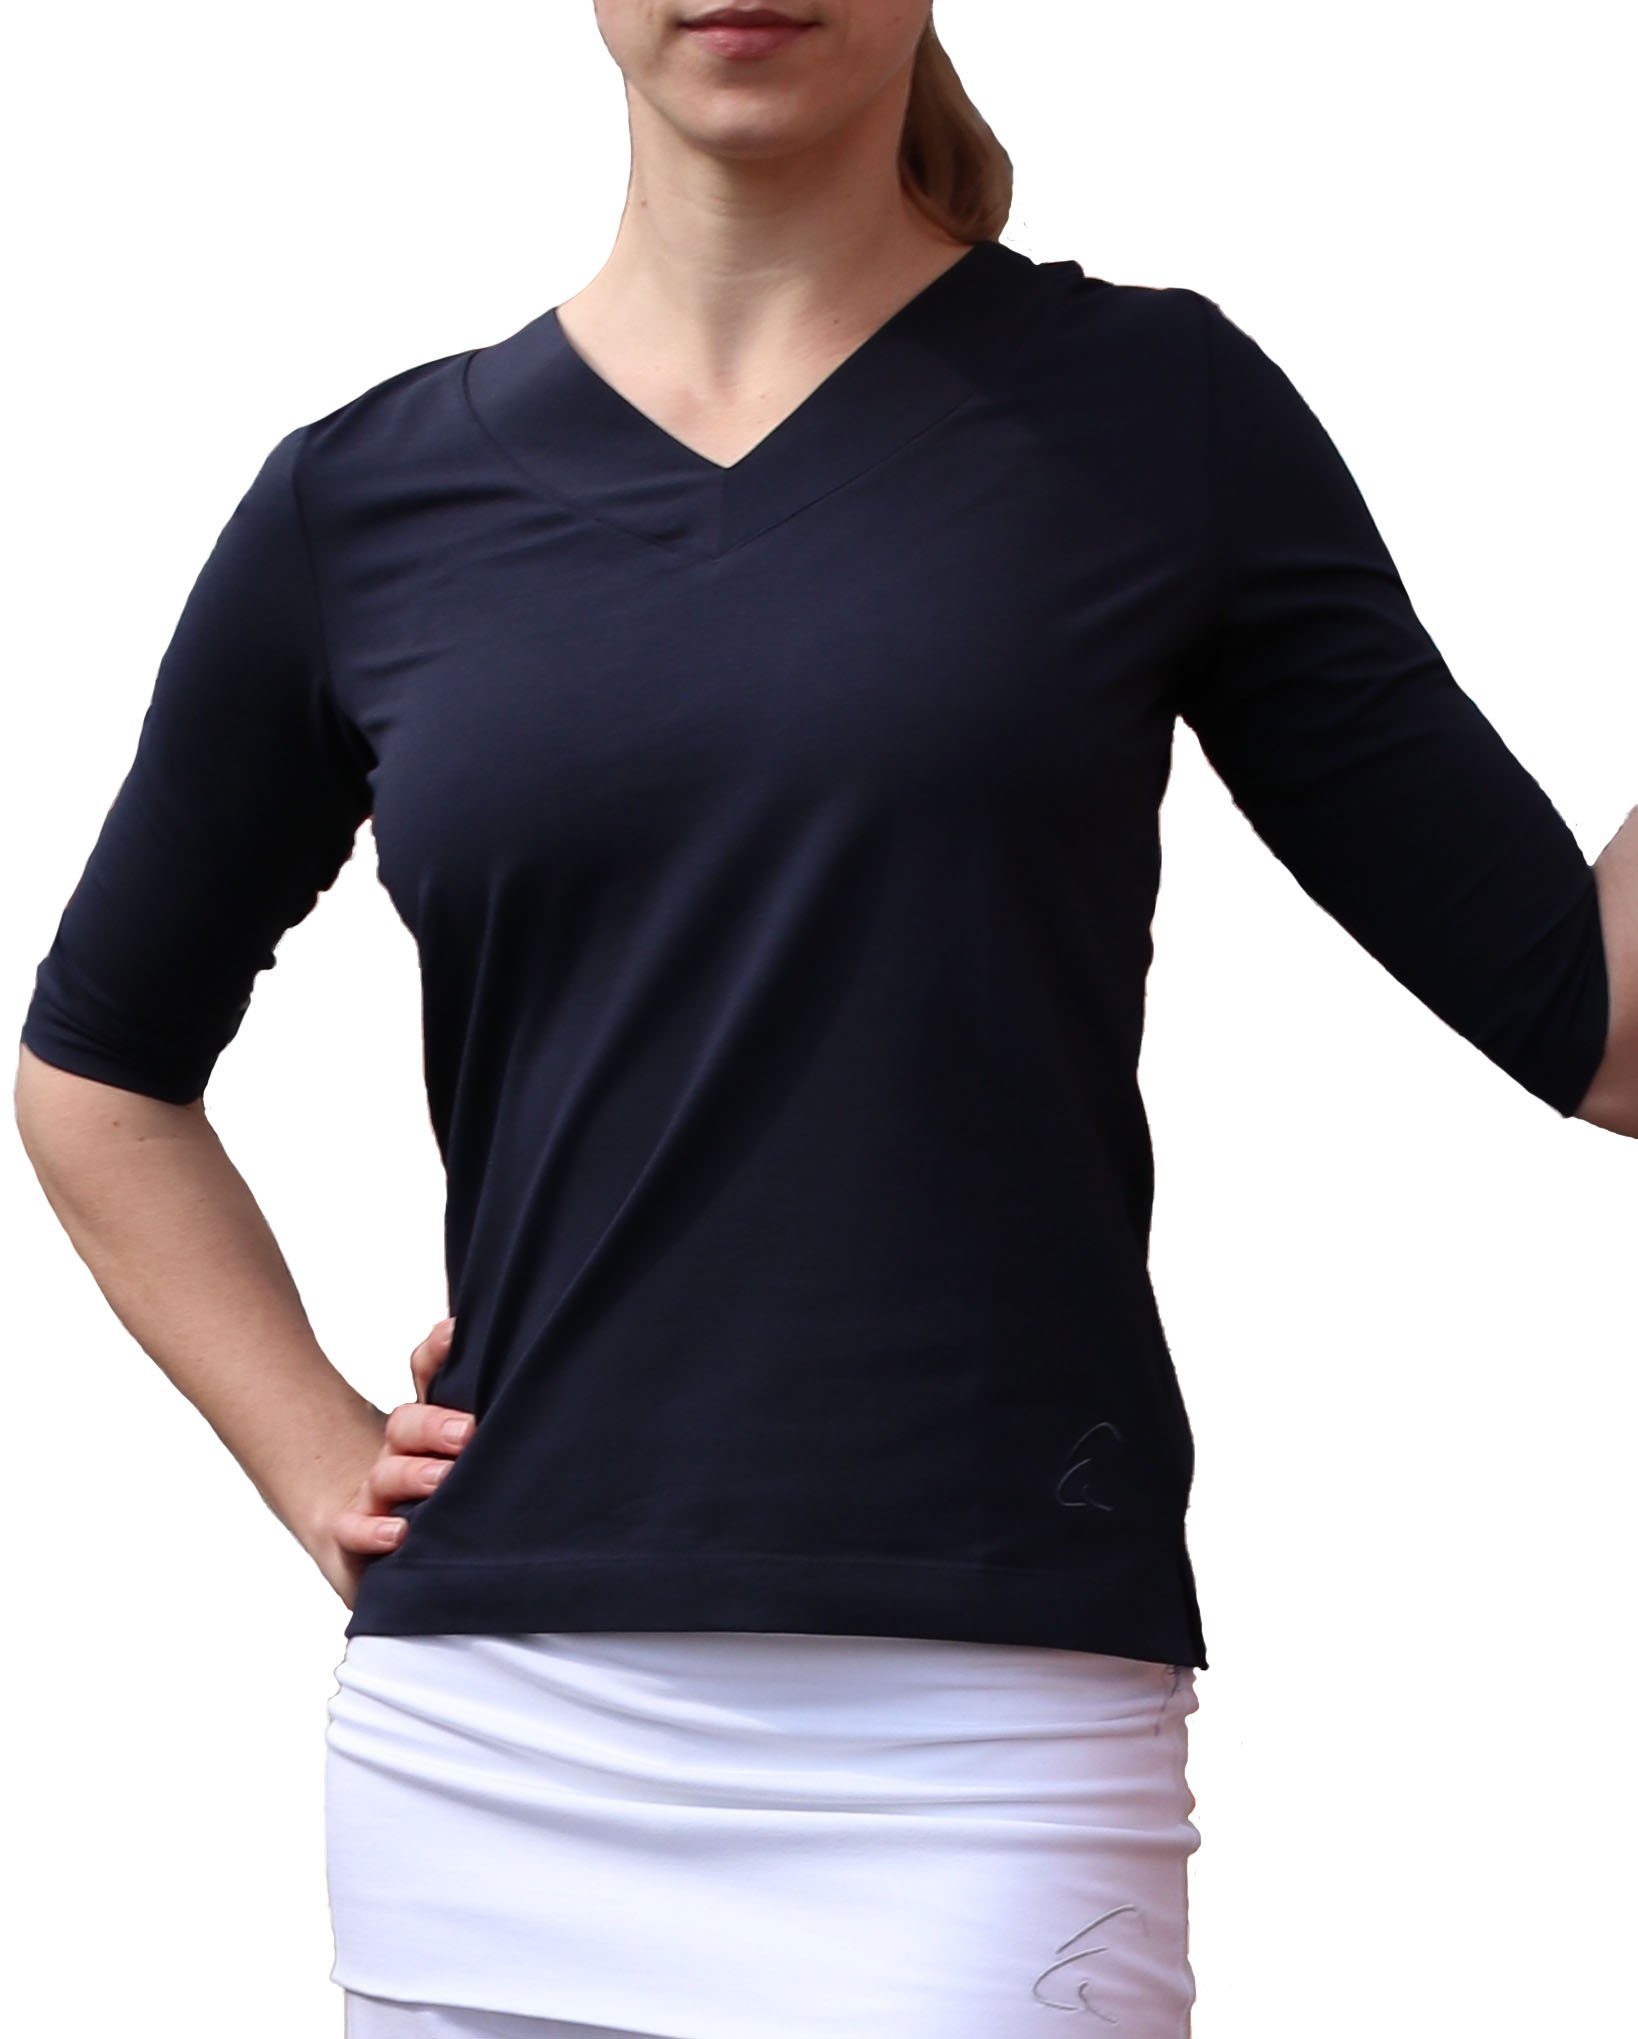 ESPARTO Yogatop Damen-Shirt Sundar in Bio-Baumwolle lang geschnitten und leicht geschlitzt, 2/3 Ärmel, V-Ausschnitt Nachtblau